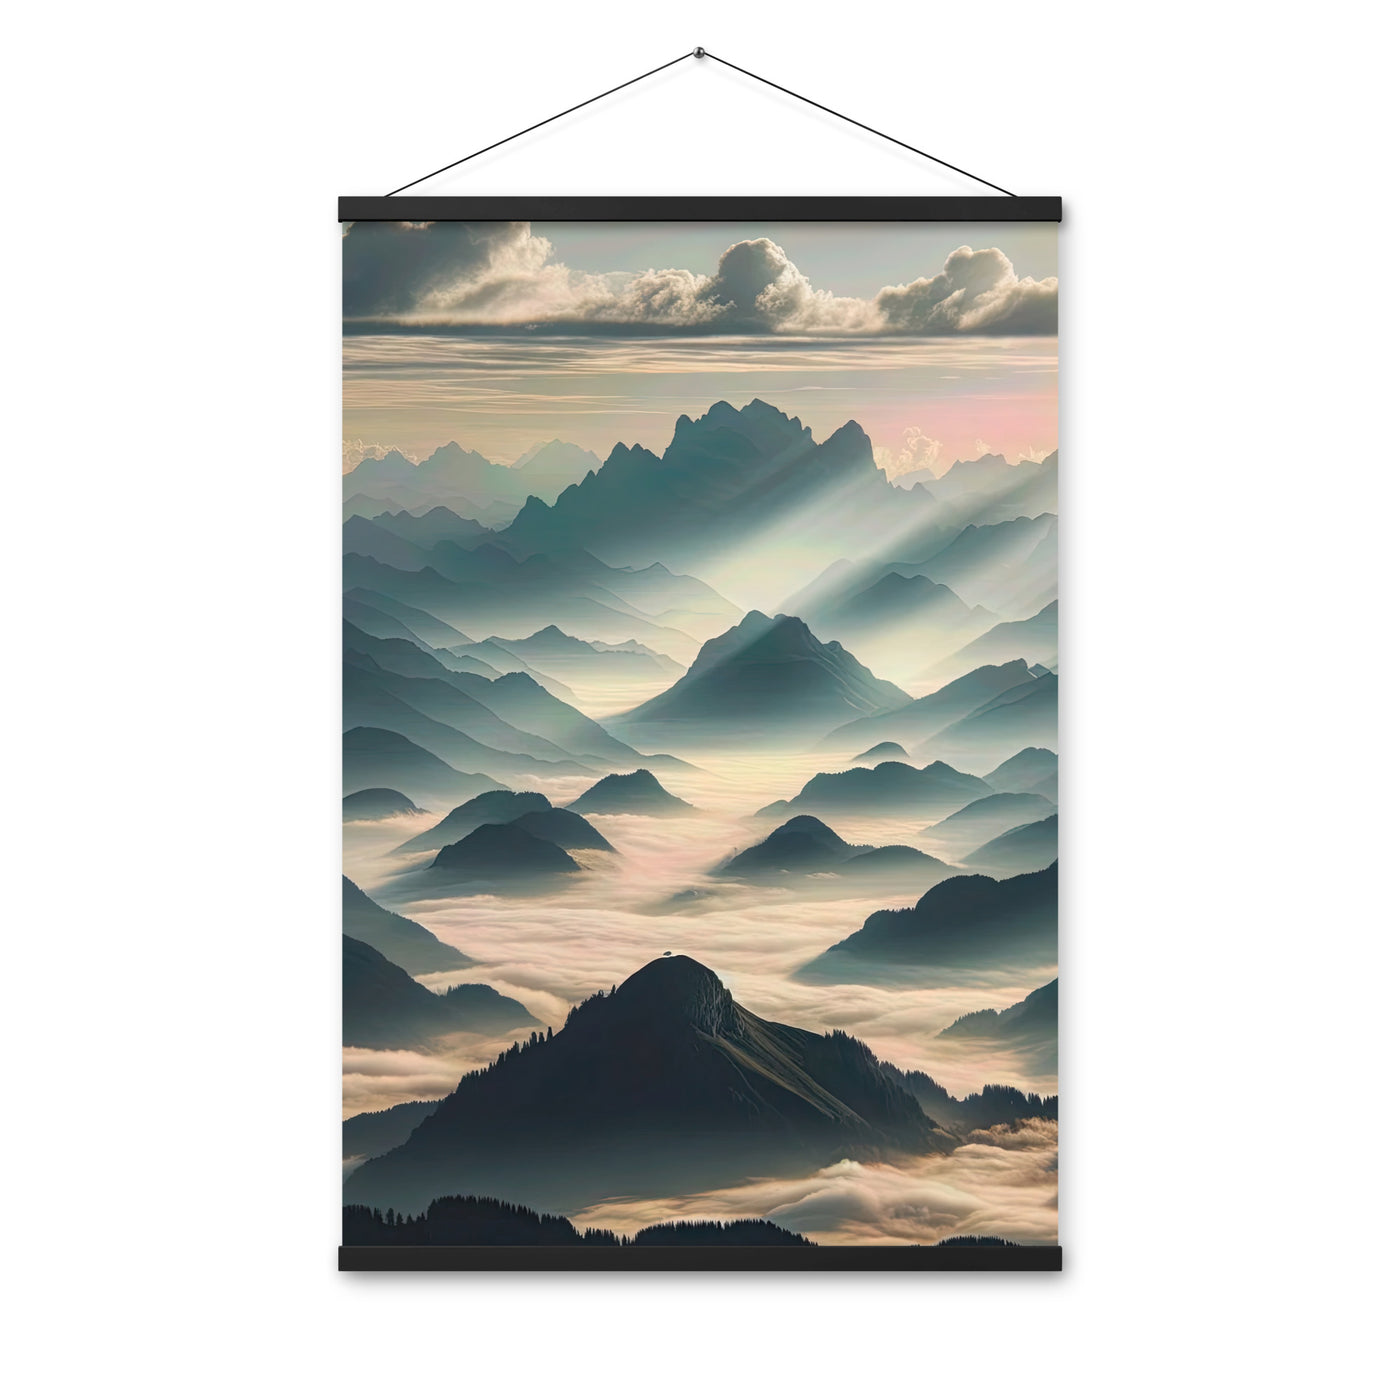 Foto der Alpen im Morgennebel, majestätische Gipfel ragen aus dem Nebel - Premium Poster mit Aufhängung berge xxx yyy zzz 61 x 91.4 cm